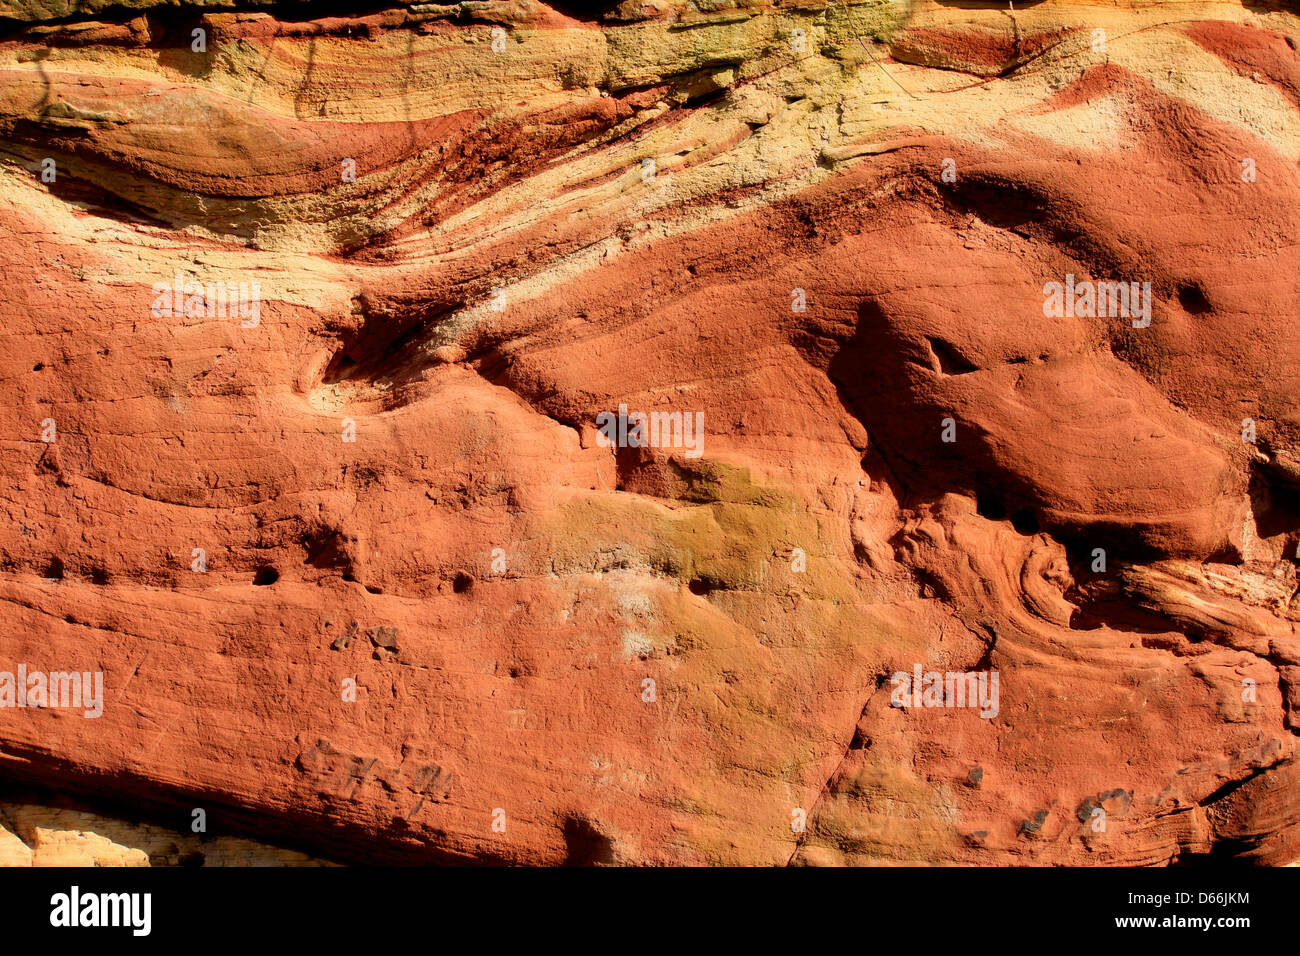 Hermoso ejemplo de geológicas plegadas nuevos estratos de arenisca roja en Chester, Reino Unido Foto de stock